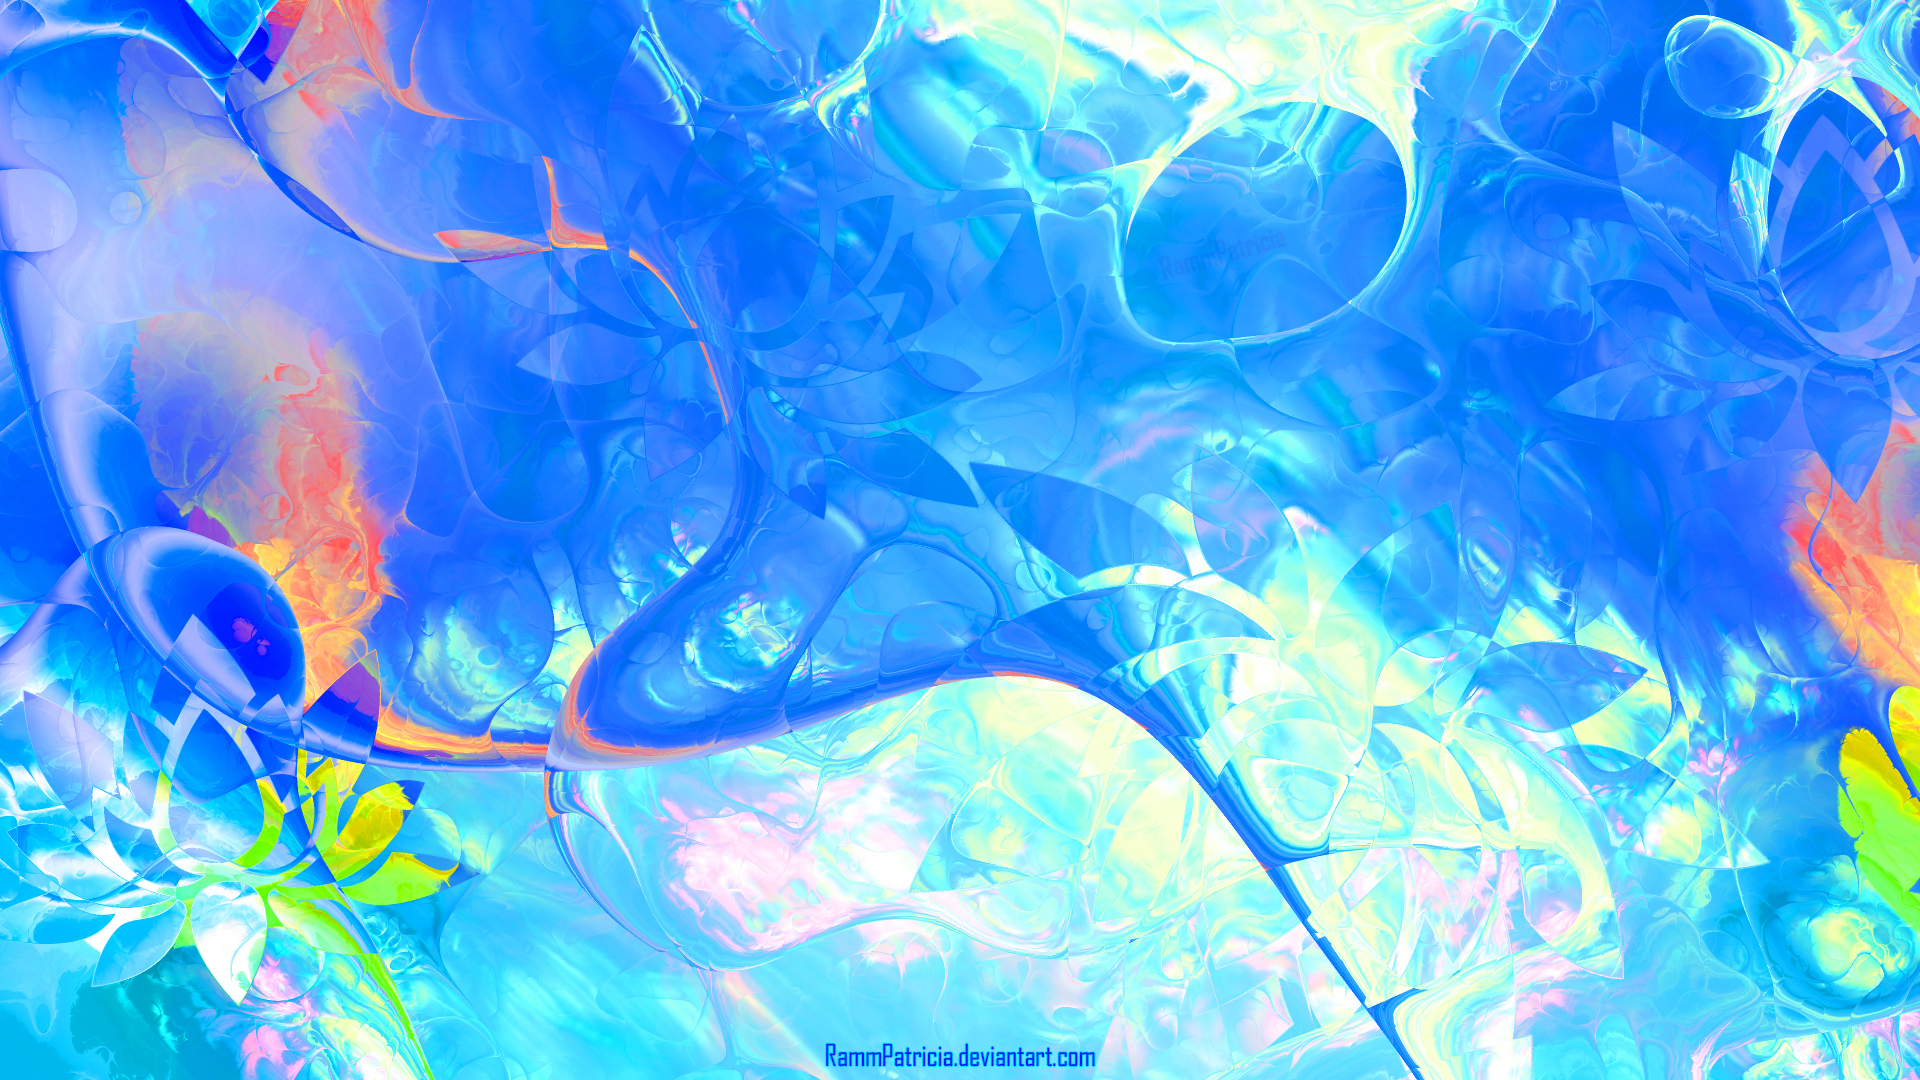 RammPatricia Abstract Digital Digital Art Colorful Water Underwater Lotus Flowers Flowers Fresh Wate 1920x1080